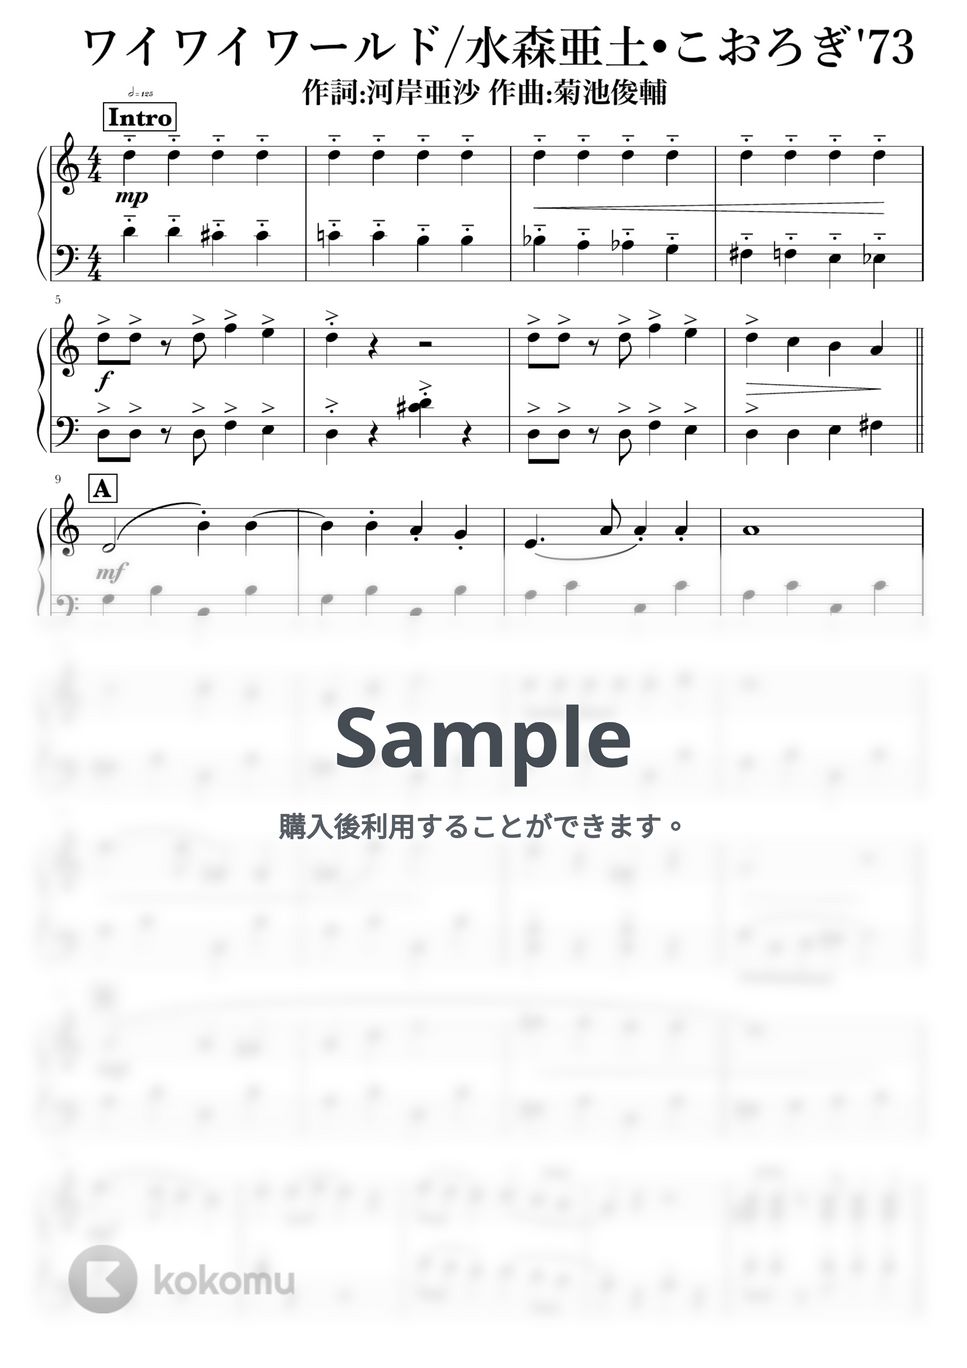 水森亜土•こおろぎ'73 - ワイワイワールド by NOTES music